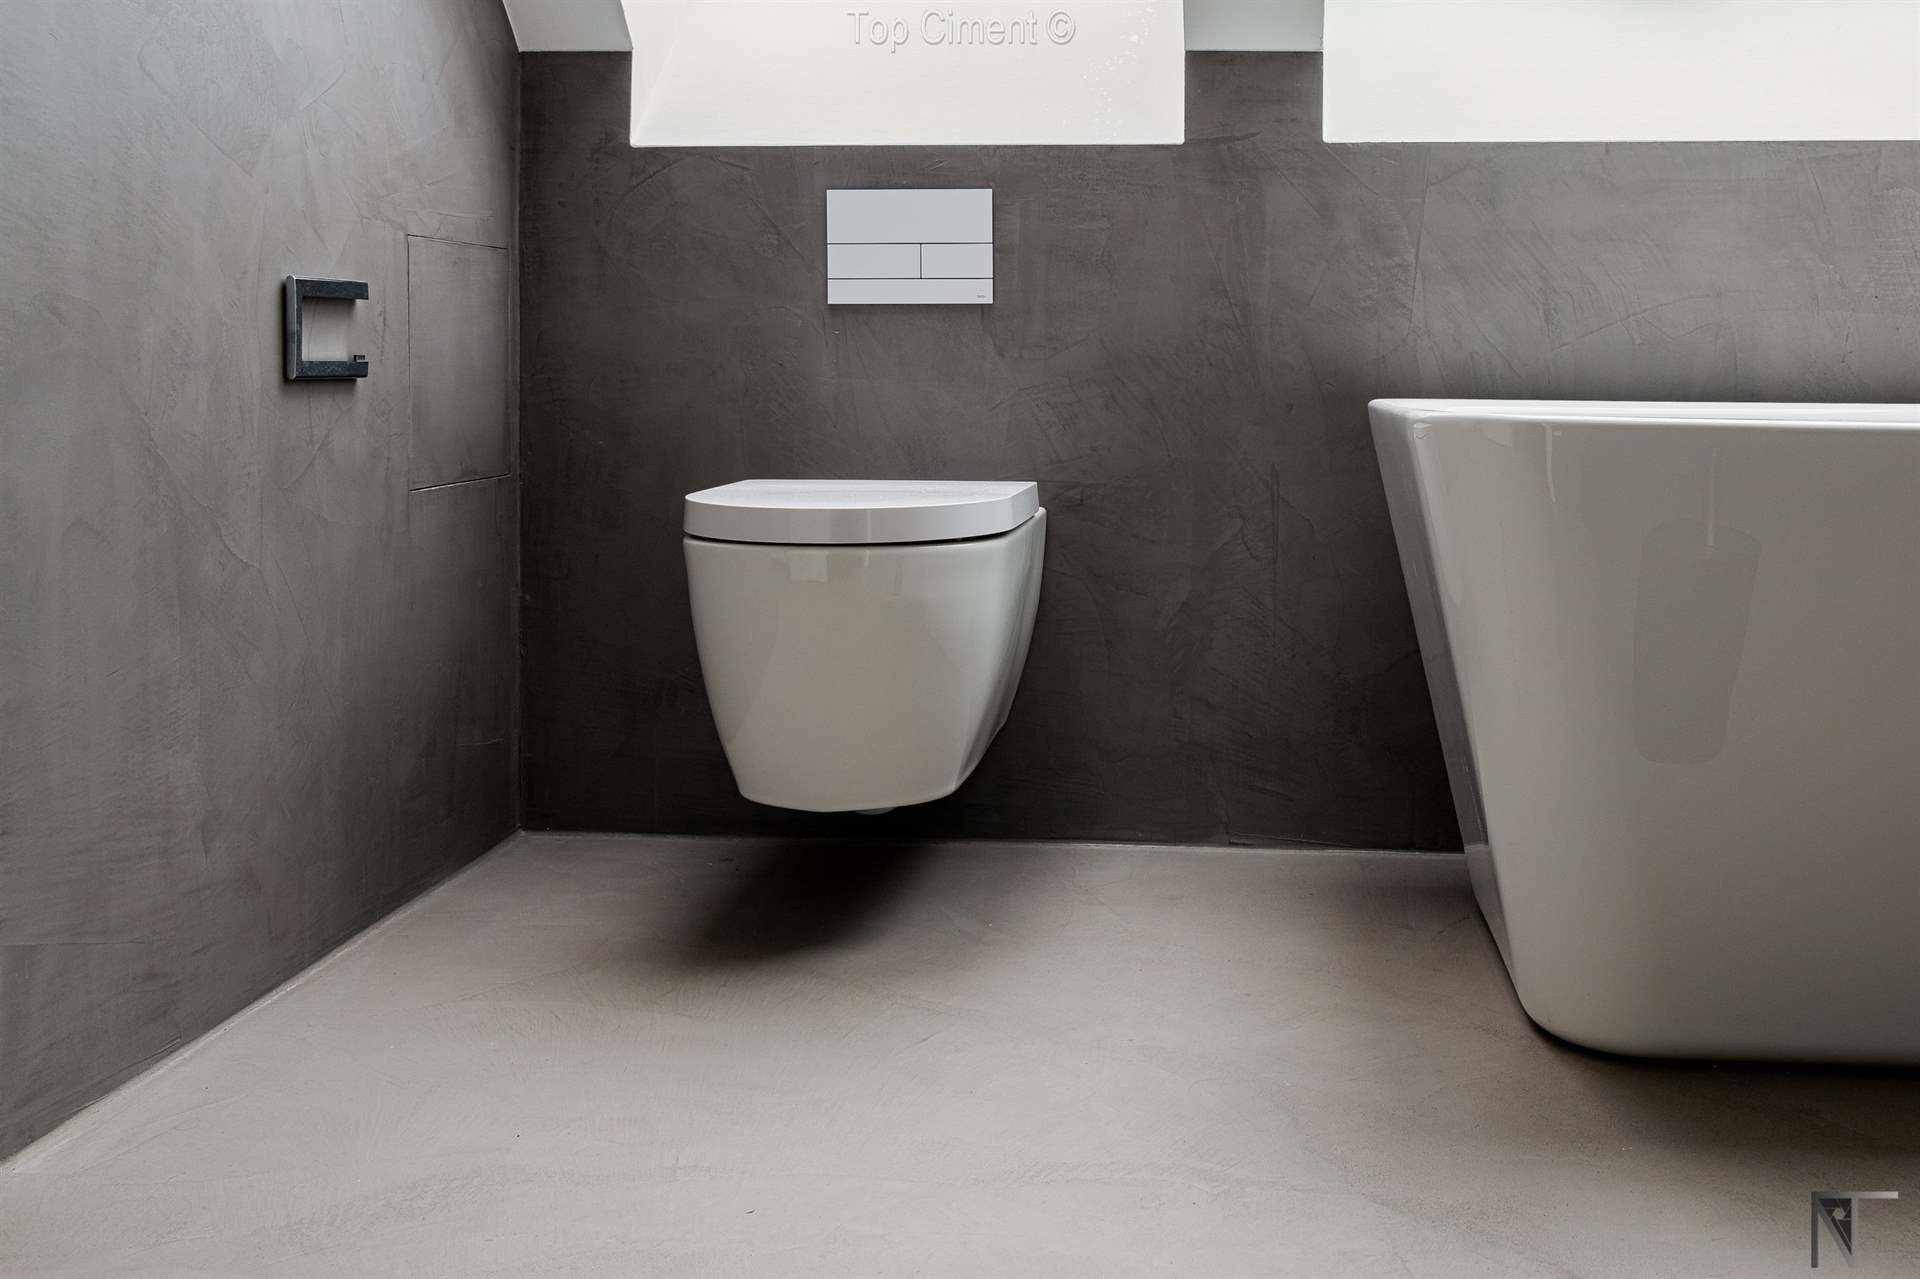 Łazienka z płytkami ceramicznymi odnowiona za pomocą szarego mikrocementu na ścianach i podłodze